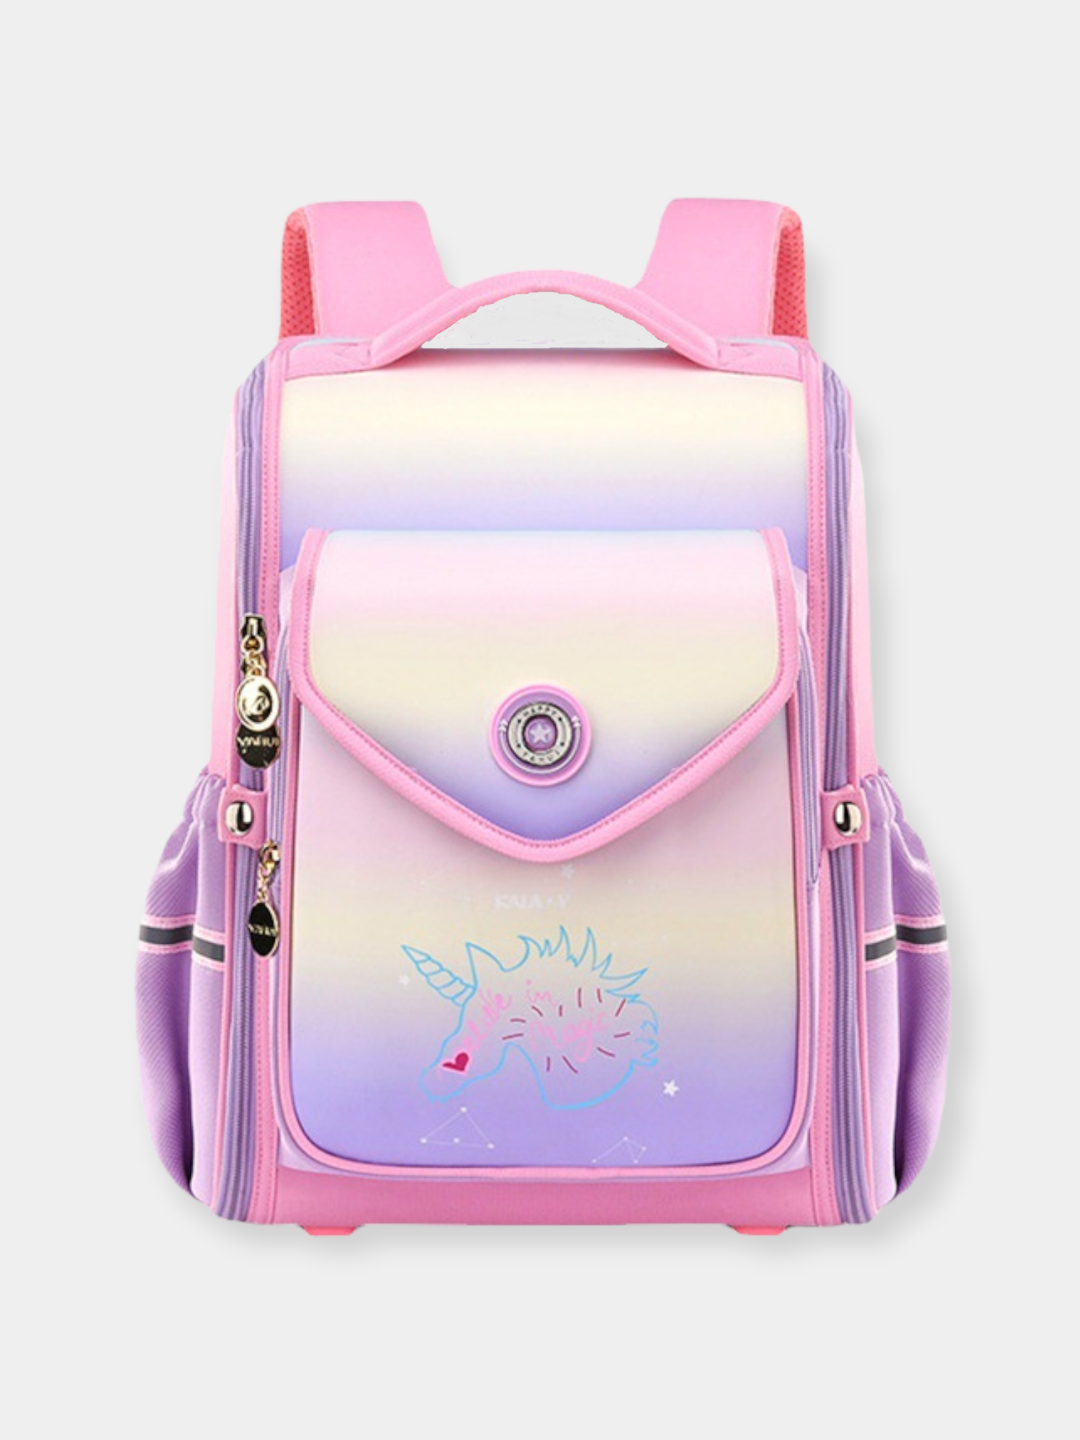 Школьный рюкзак для девочек 1-4 класса "Единорог" школьная сумка для младших классов.